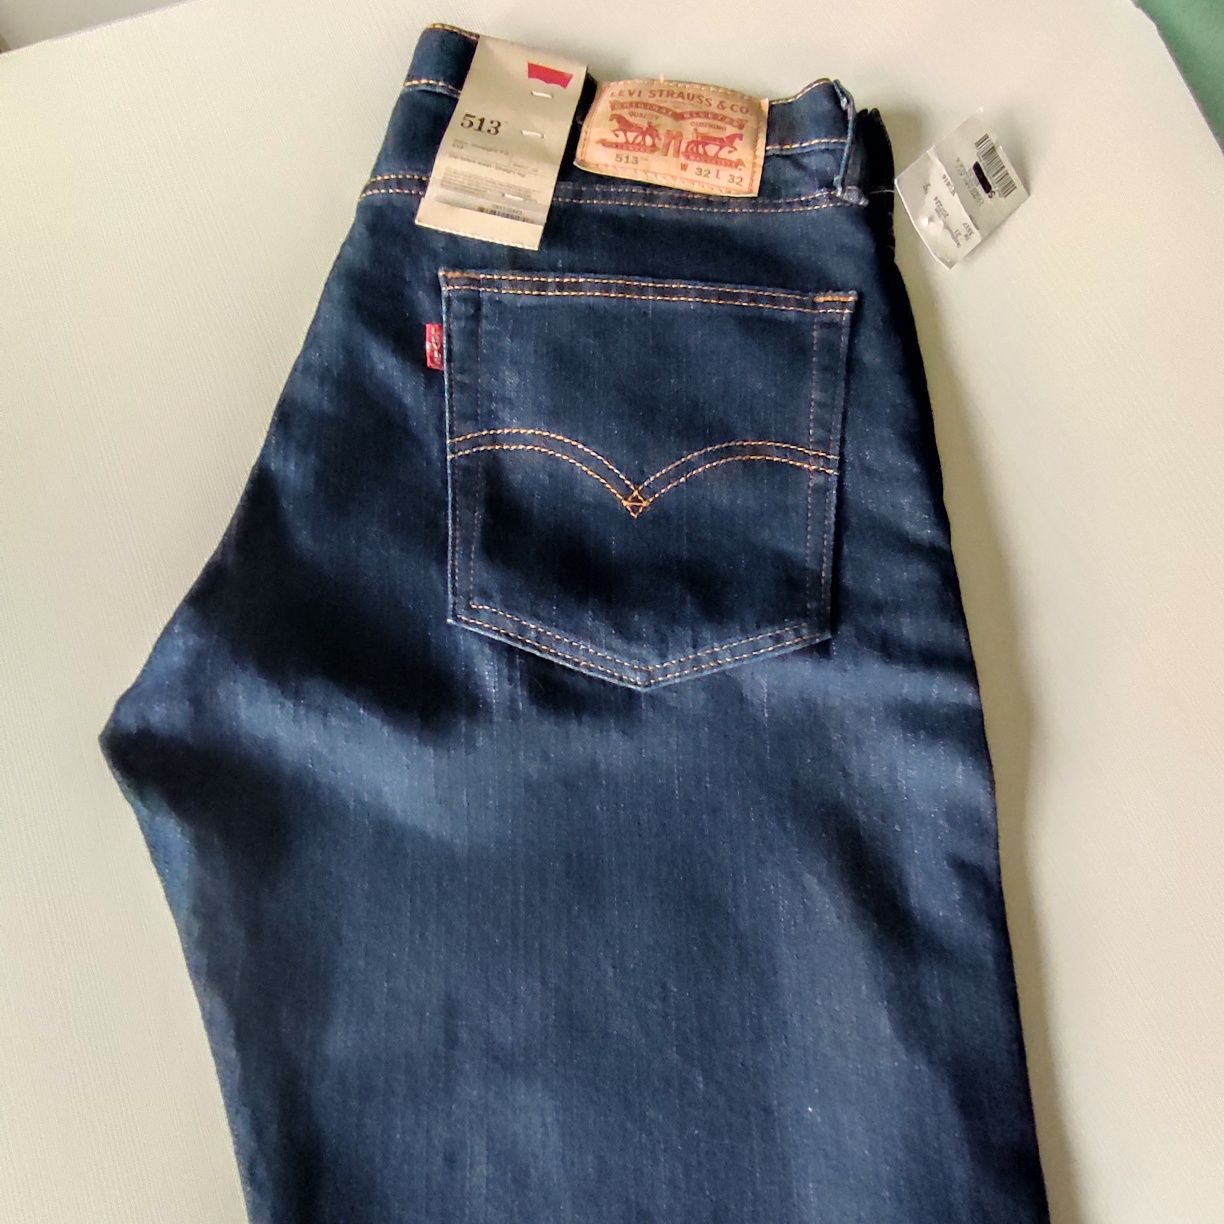 Sprzedam nowe jeansy Levi's 513 rozmiar 32/32